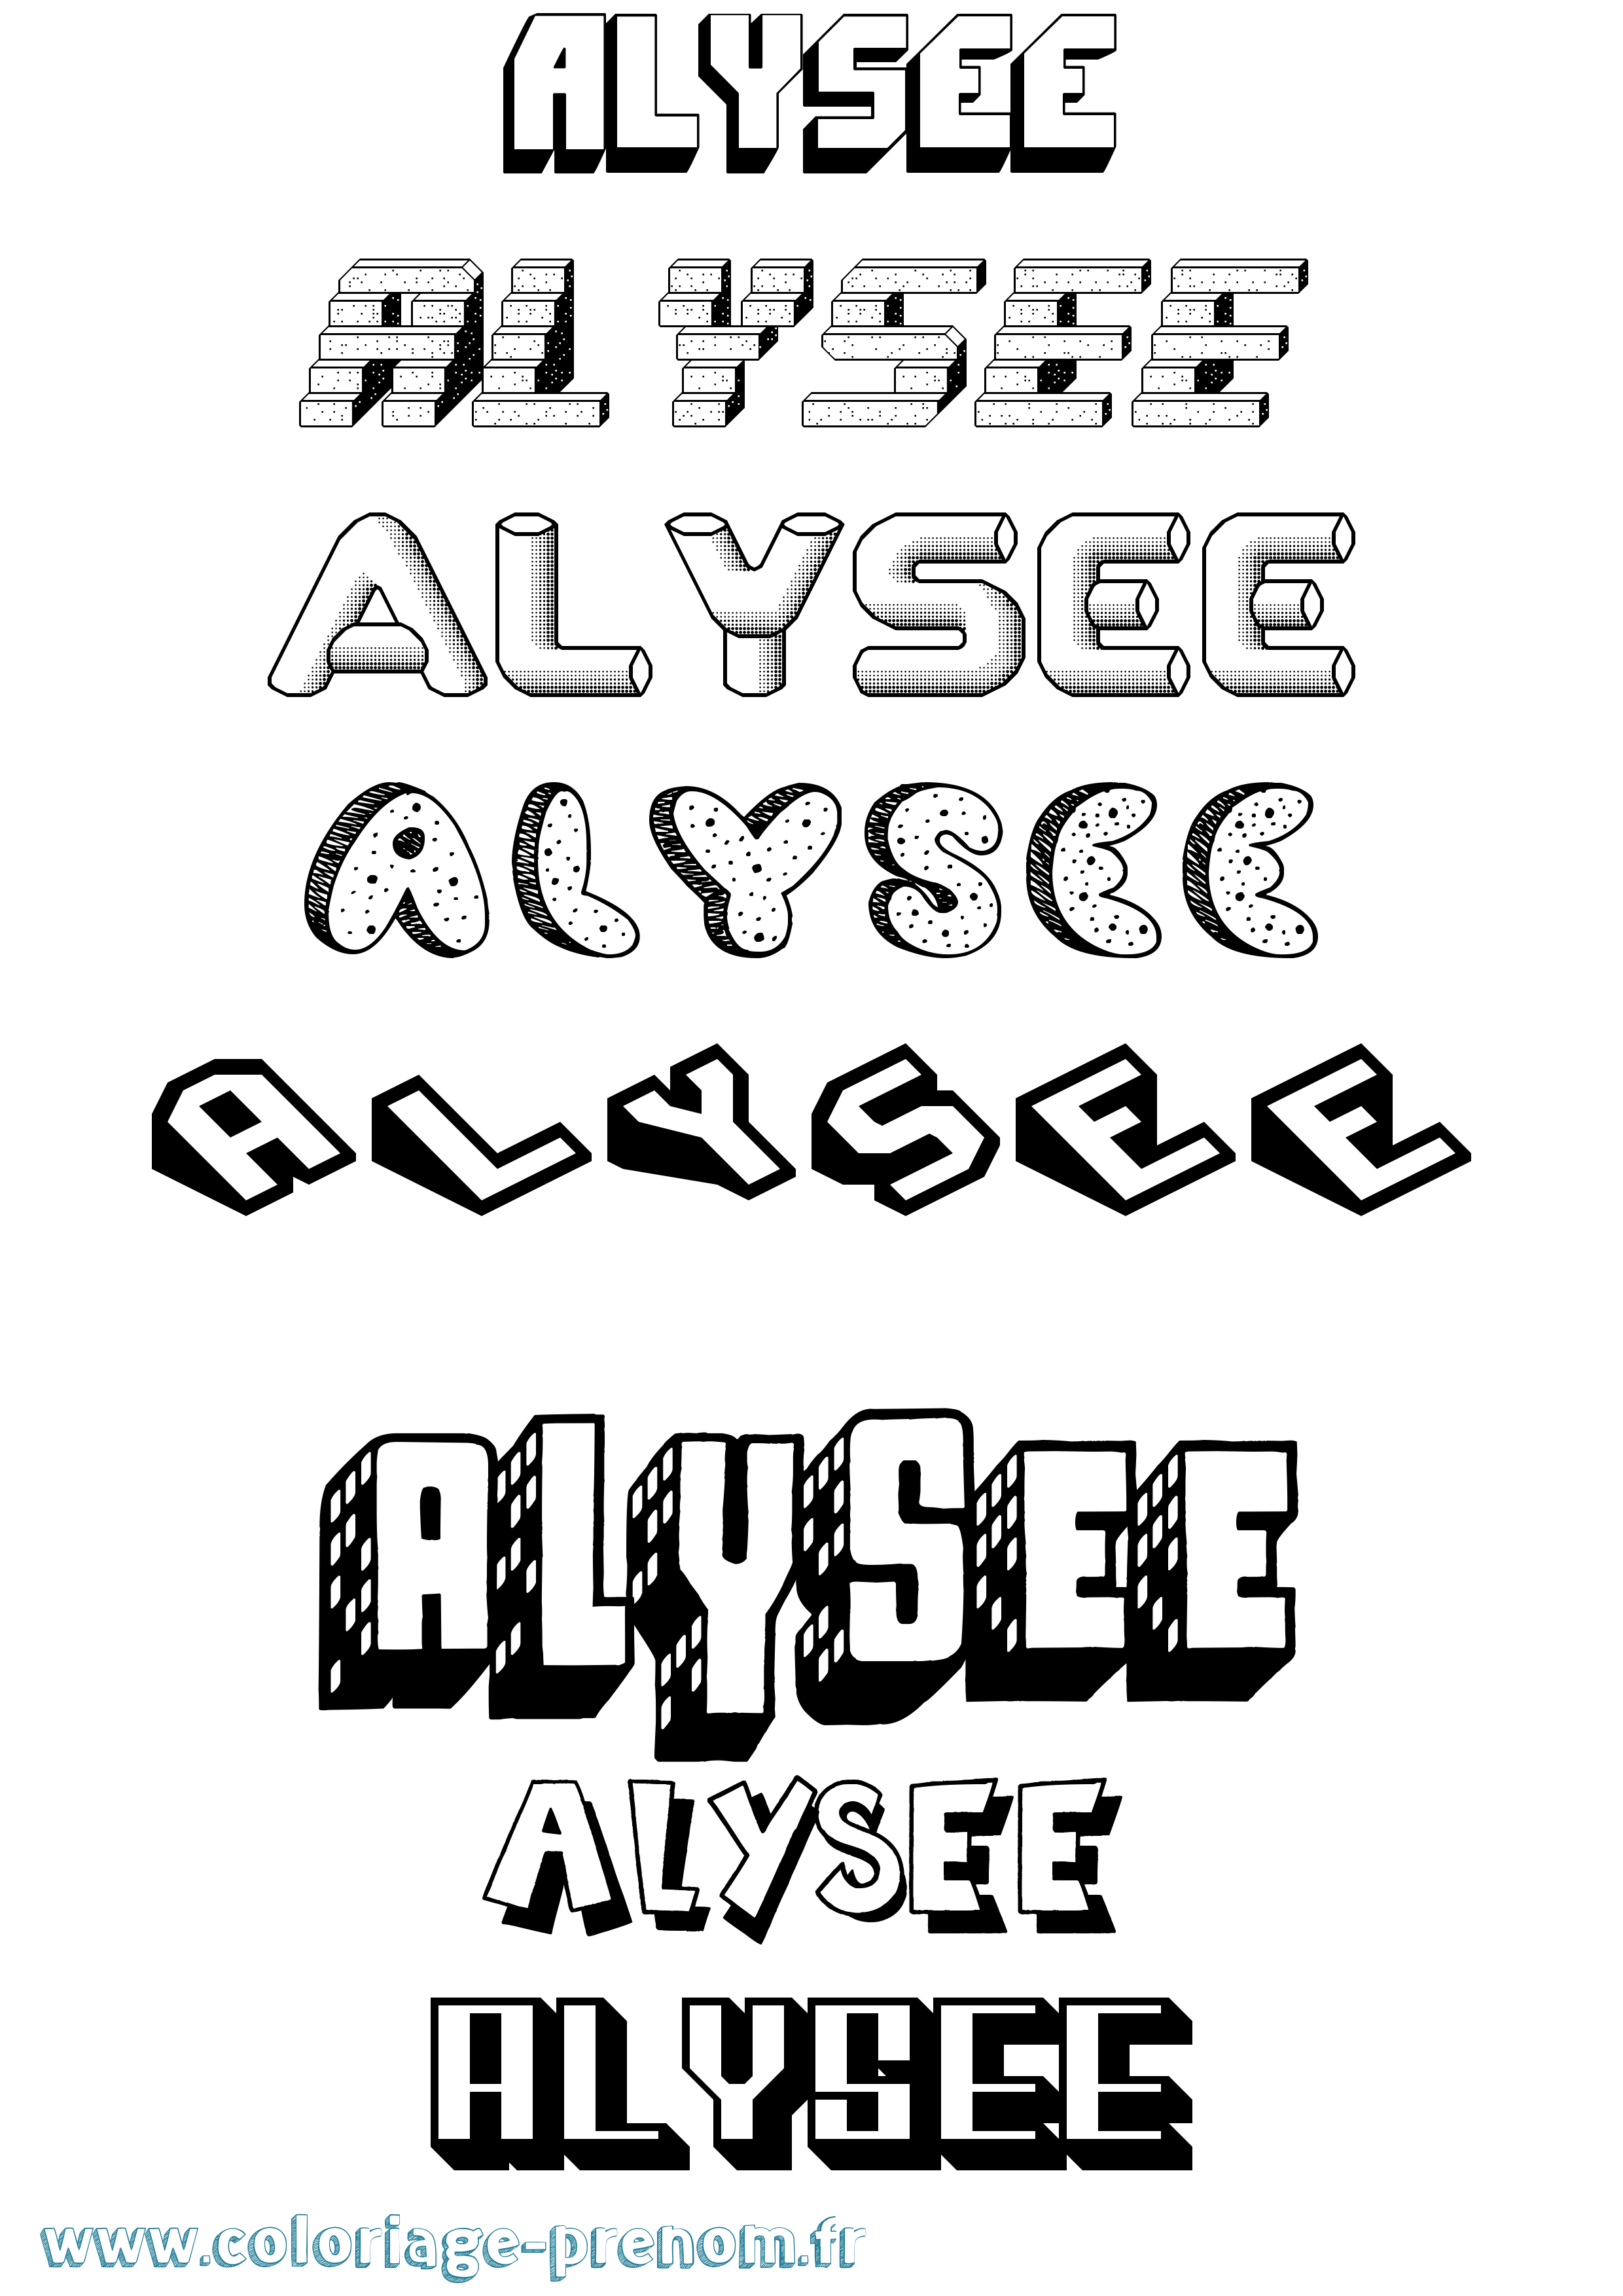 Coloriage prénom Alysee Effet 3D